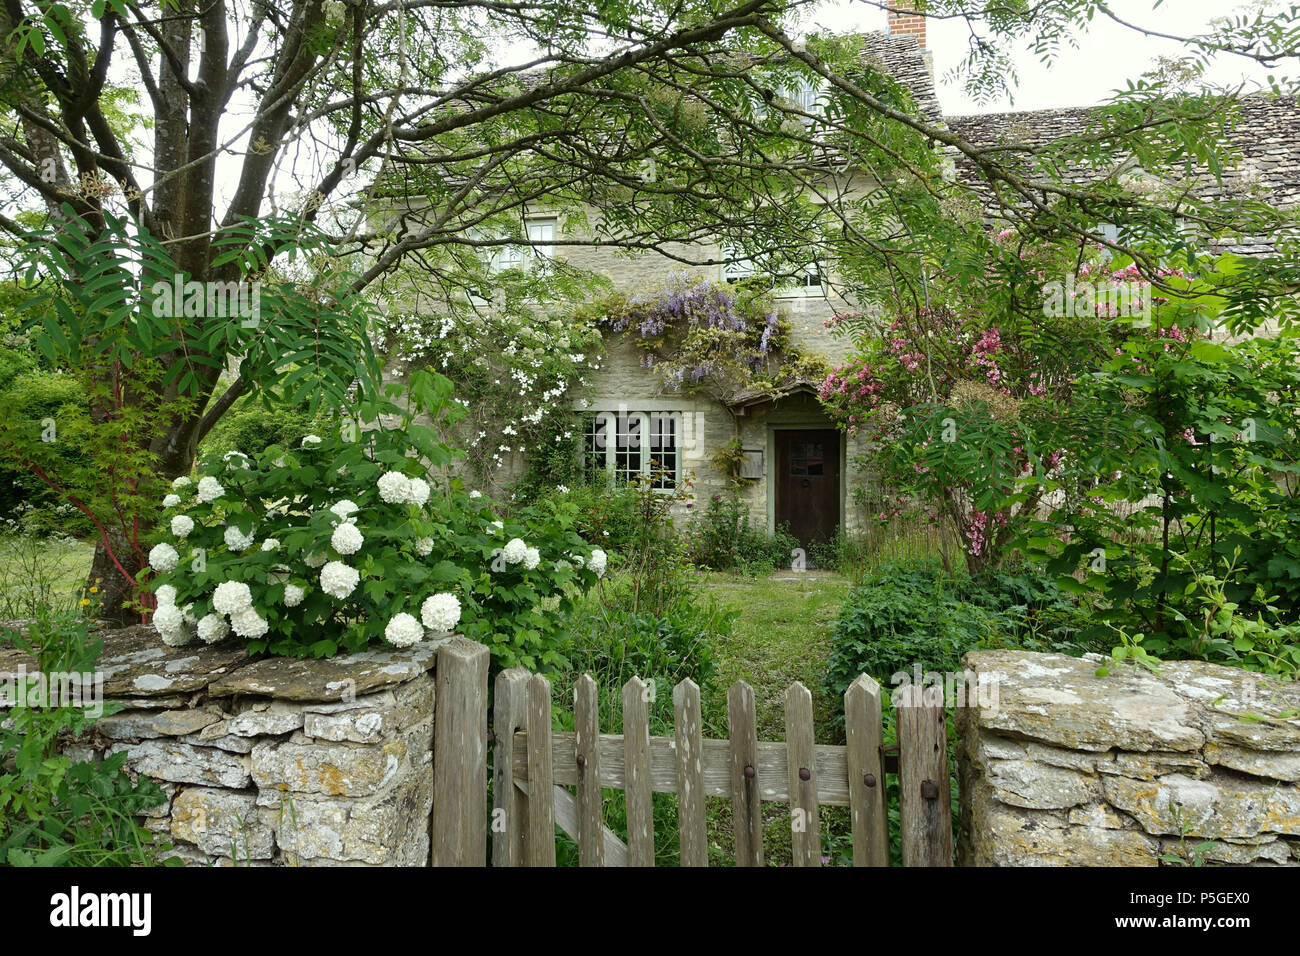 N/A. Anglais : Cottage - Kelmscott, Oxfordshire, Angleterre. 25 mai 2016, 06:44:35. Daderot 384 chalets - Kelmscott, Oxfordshire, Angleterre - DSC09937 Banque D'Images